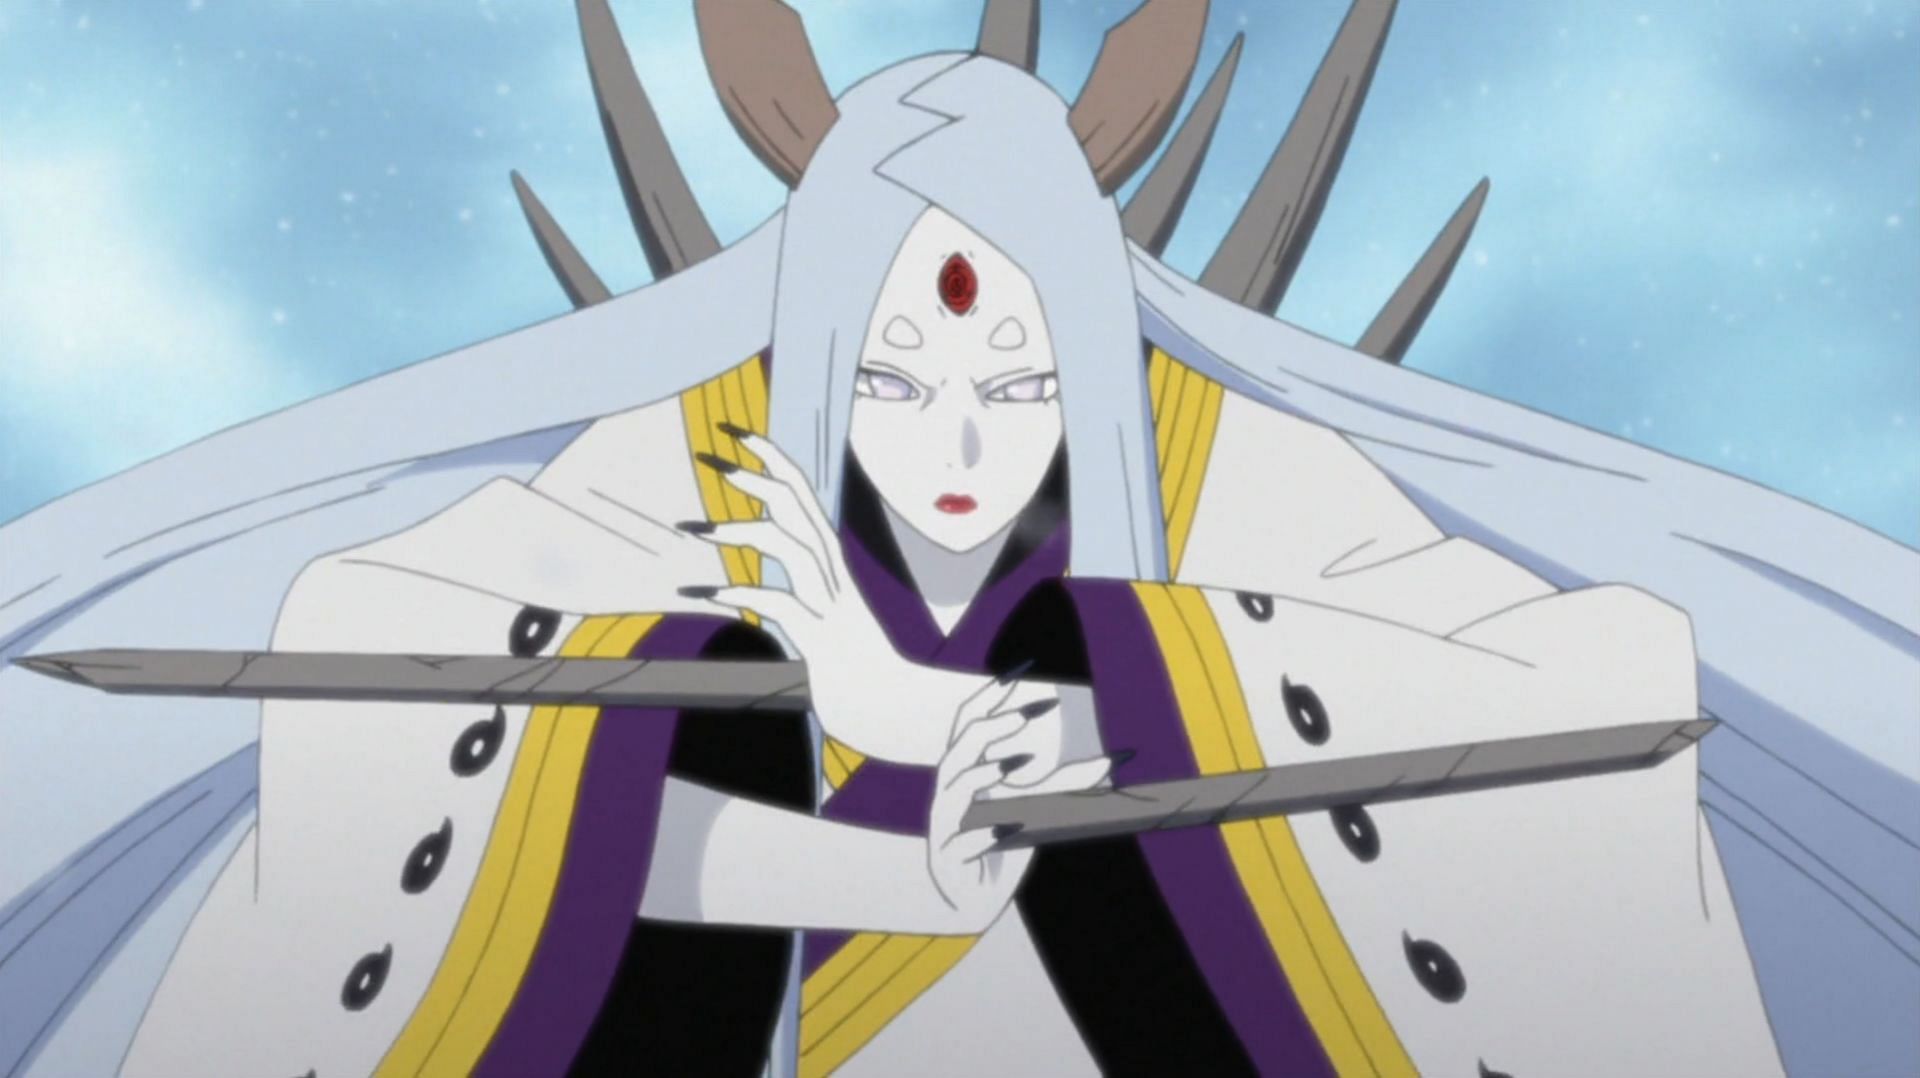 Kaguya Otsutsuki as seen in Naruto (Image credits: Masashi Kishimoto/ Studio Pierrot/ Viz Media)